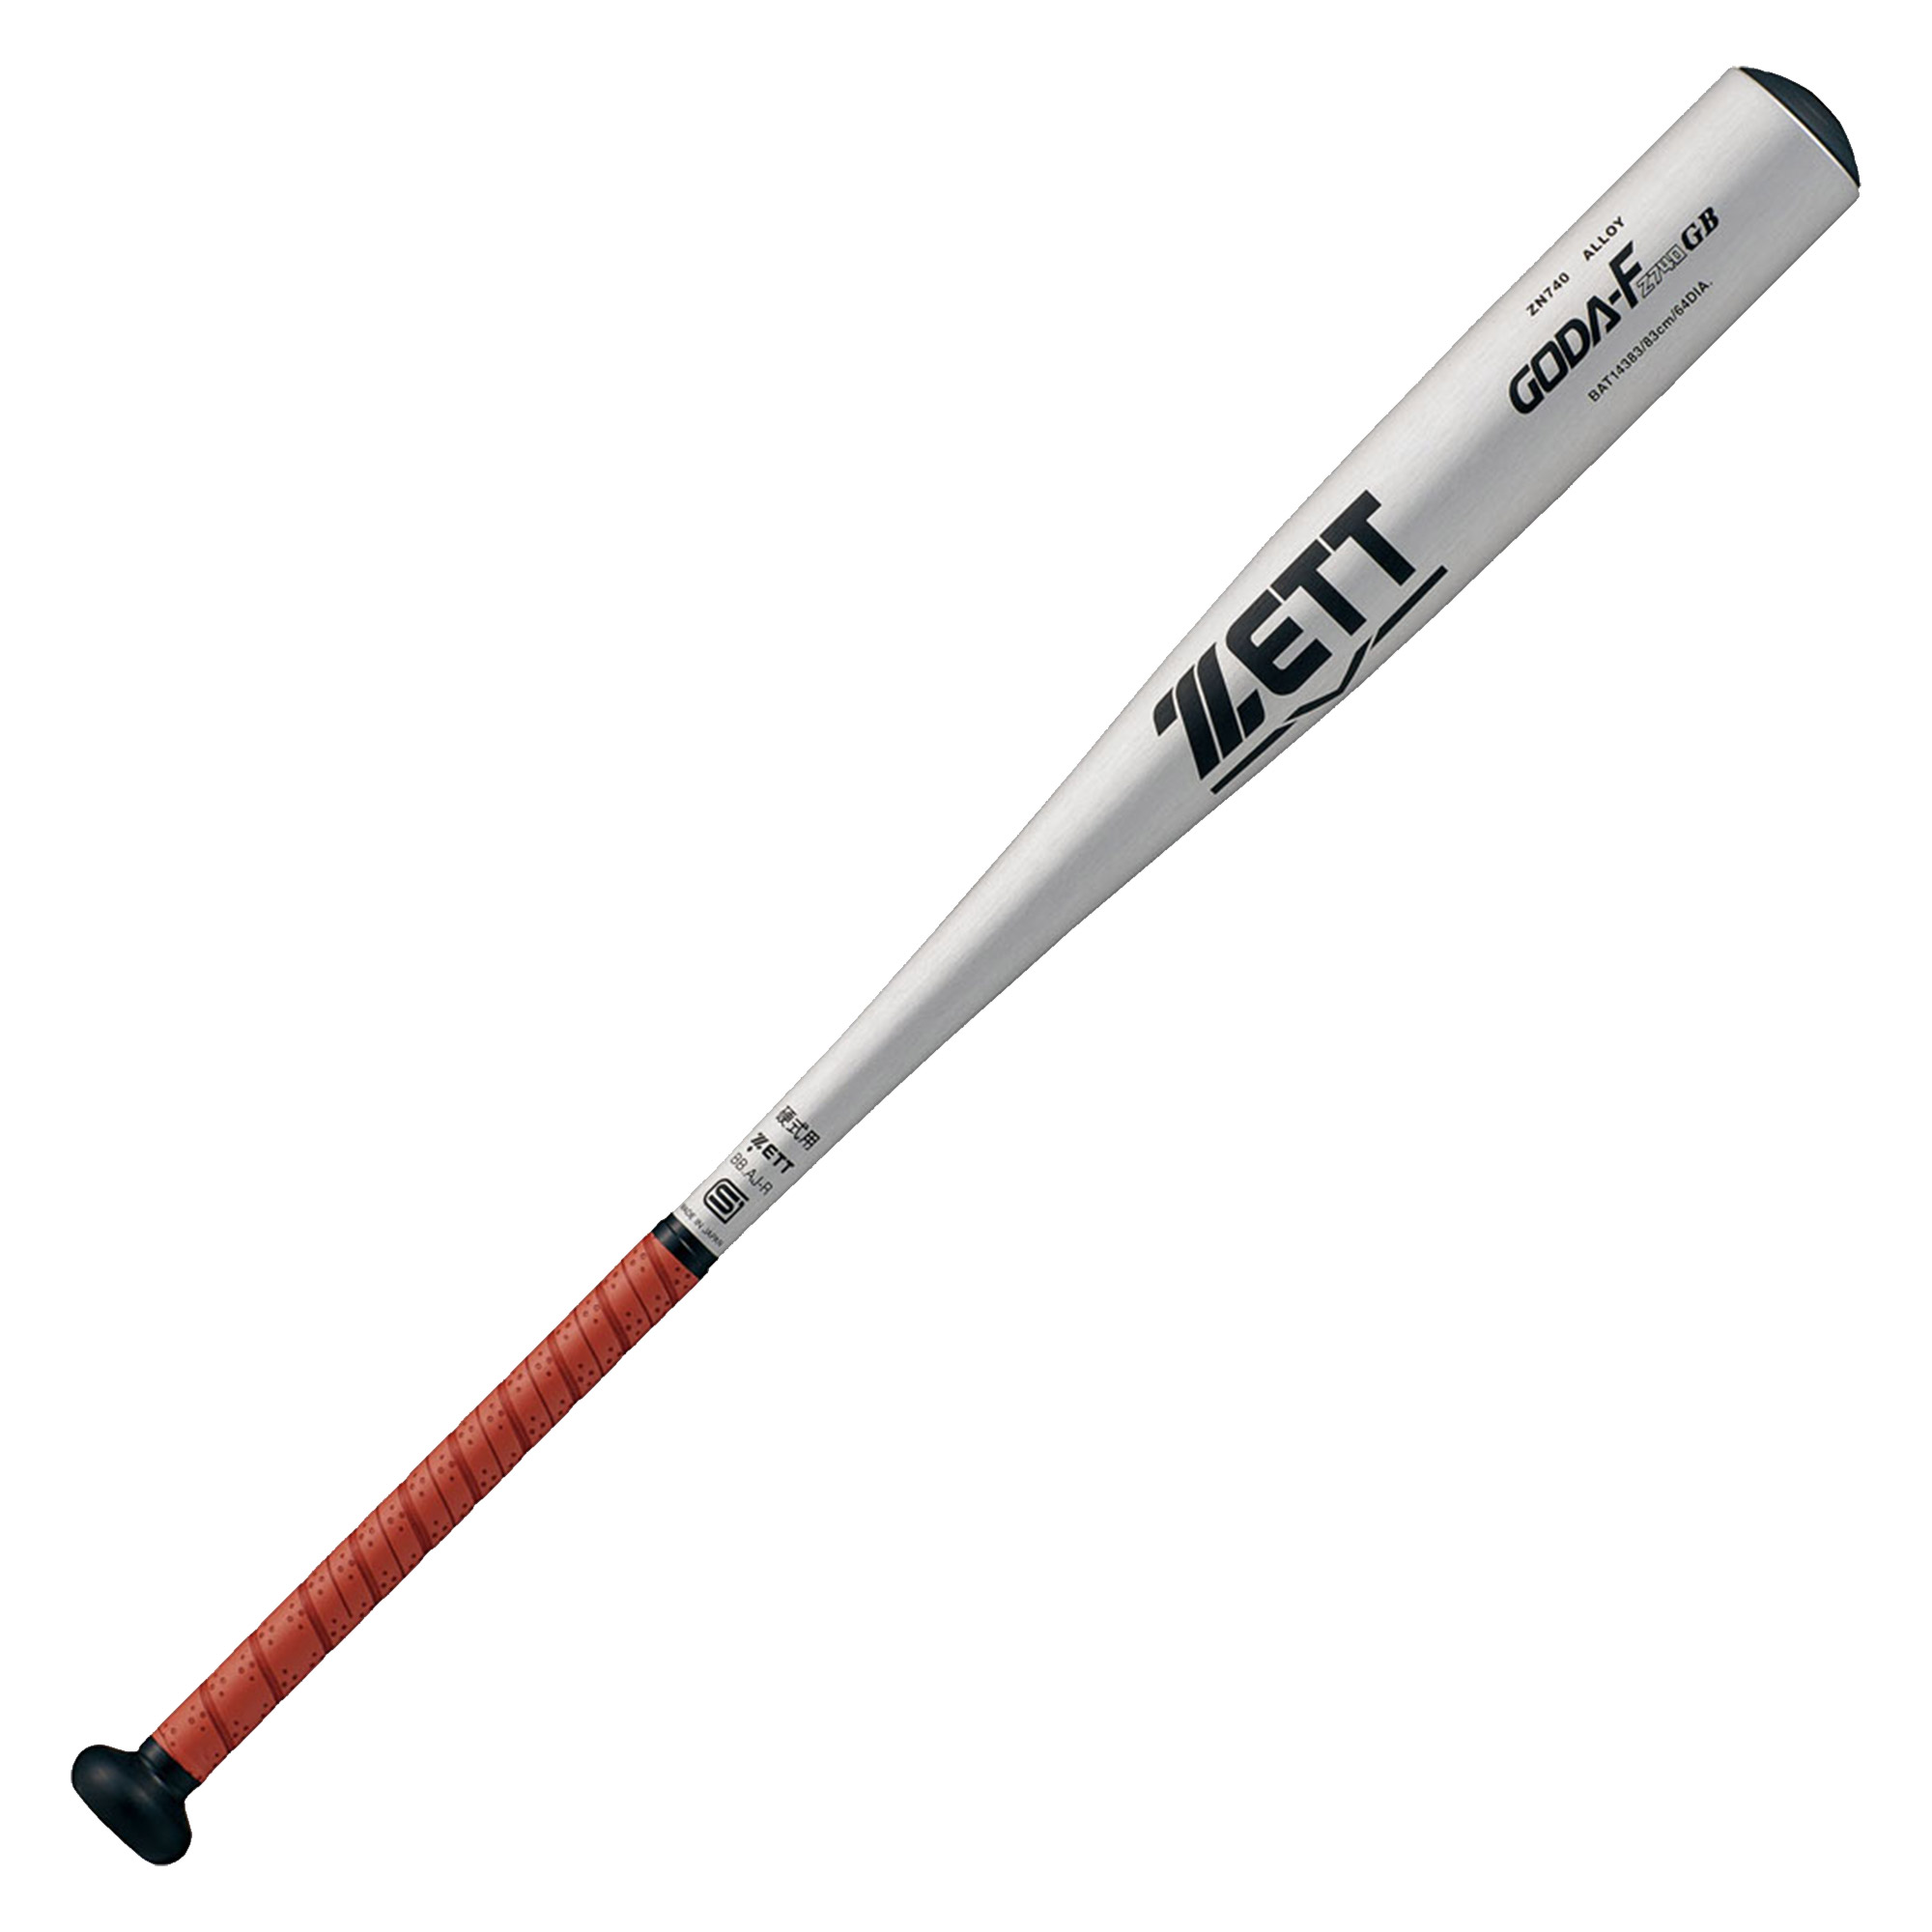 ゼット バット 大人 一般 ZETT BAT14384 BAT14383 シルバー ゴールド オレンジ 野球 ベースボール バット 硬式 金属 一般  大人 野球用品 スポーツ 部活 運動